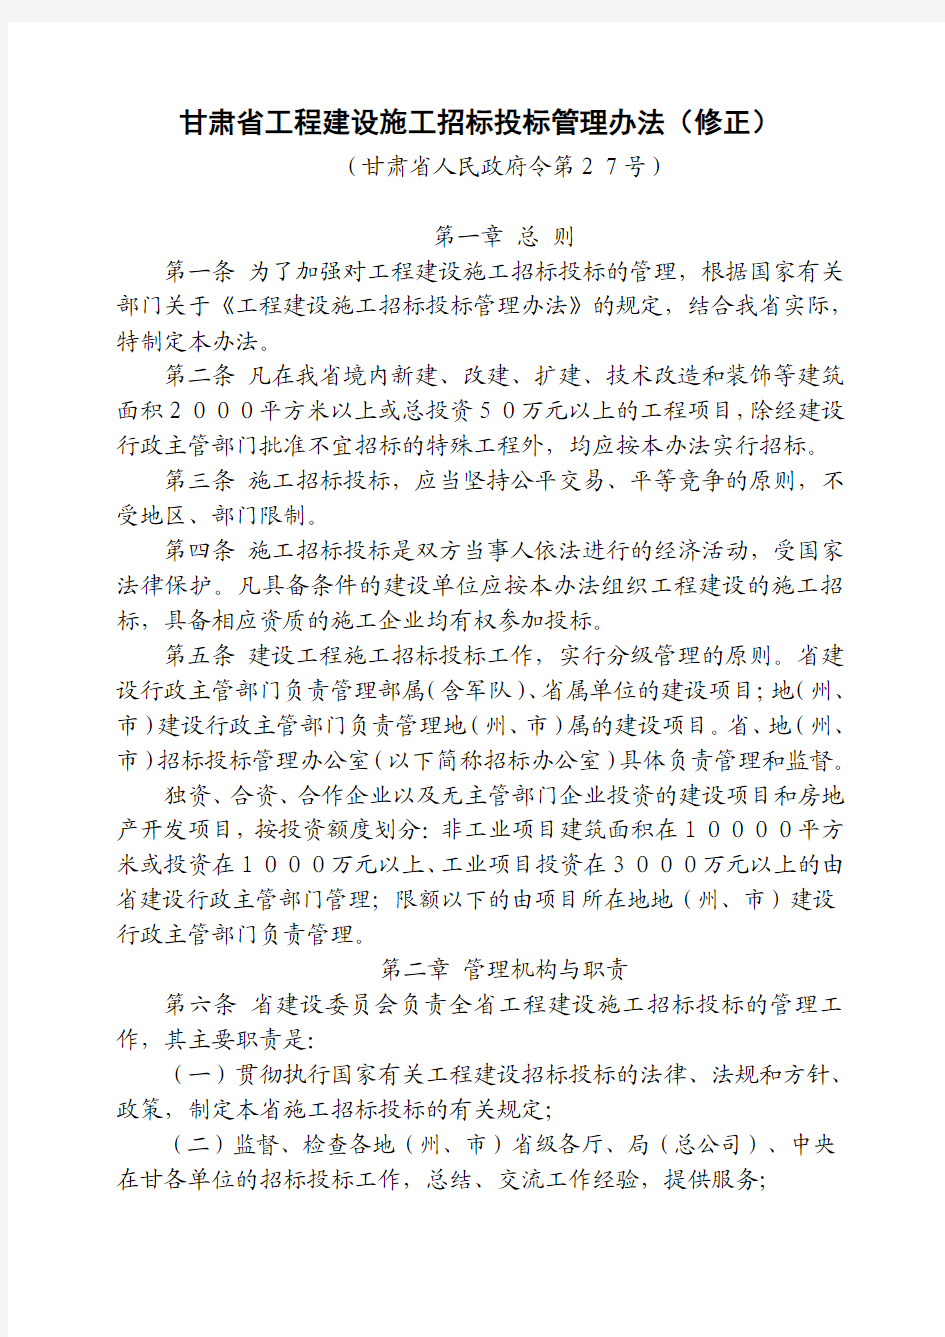 甘肃省工程建设施工招标投标管理办法(修正)